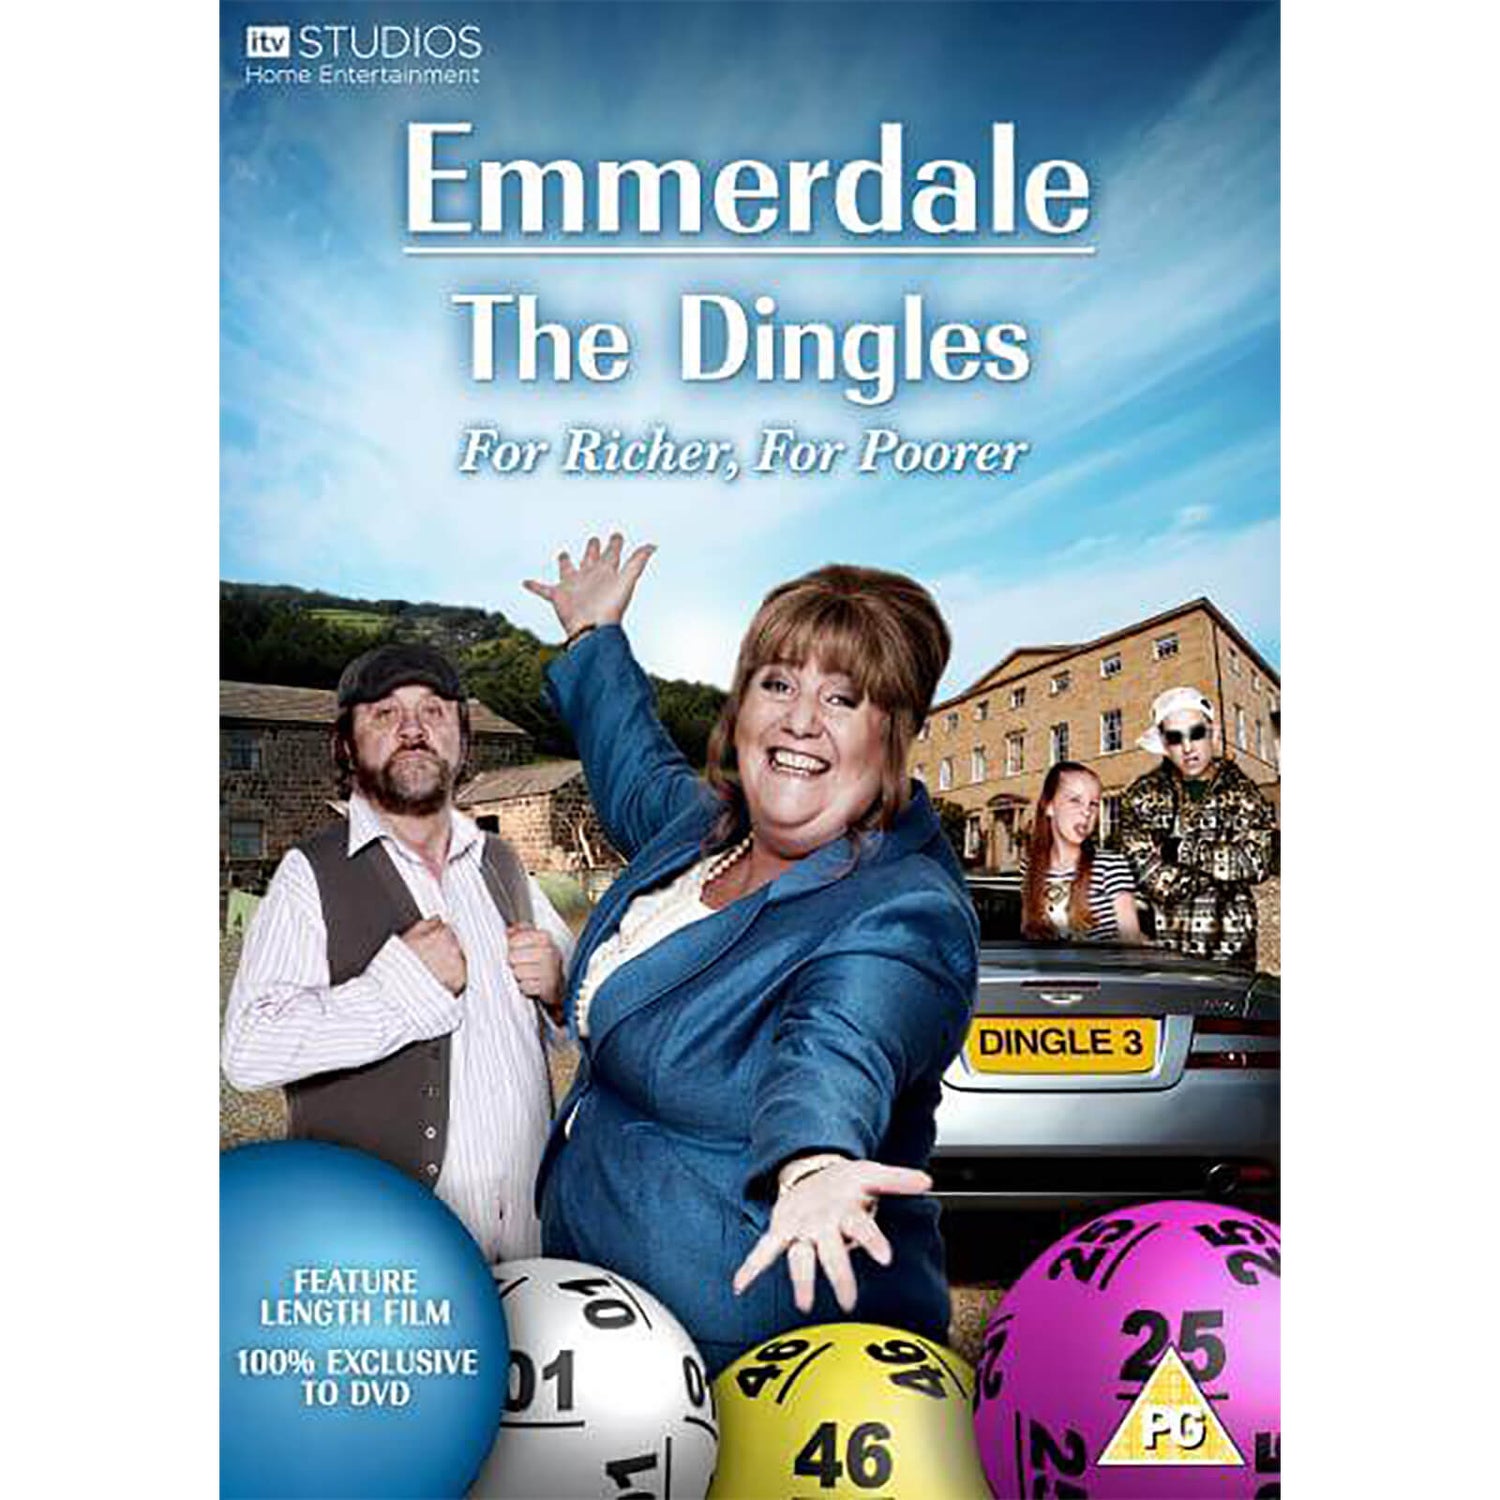 Emmerdale - The Dingles For Richer For Poorer